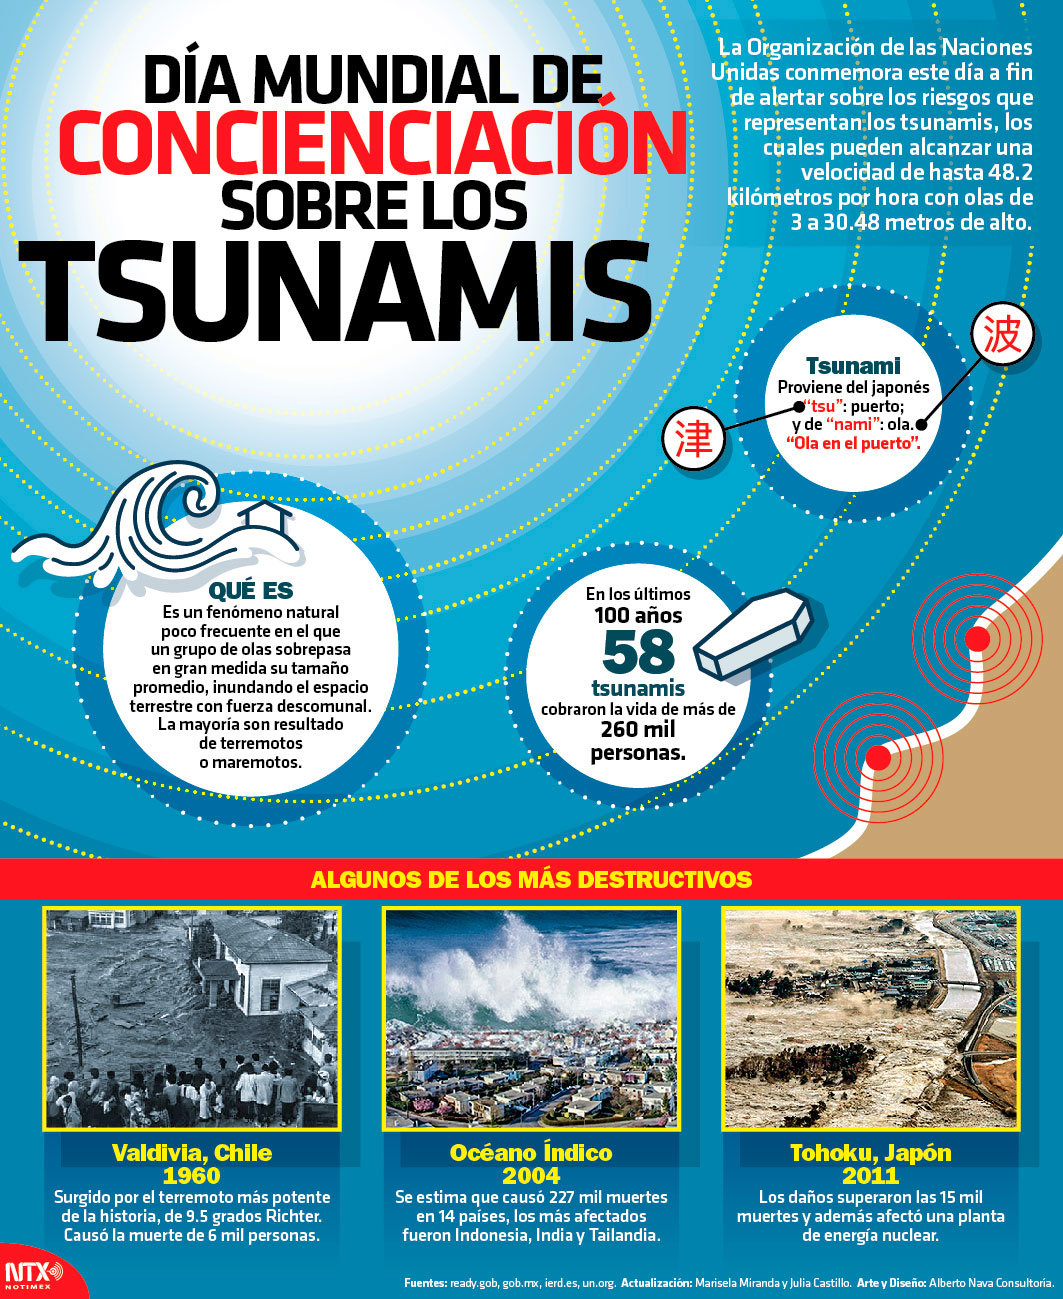 Da Mundial de concienciacin sobre los tsunamis